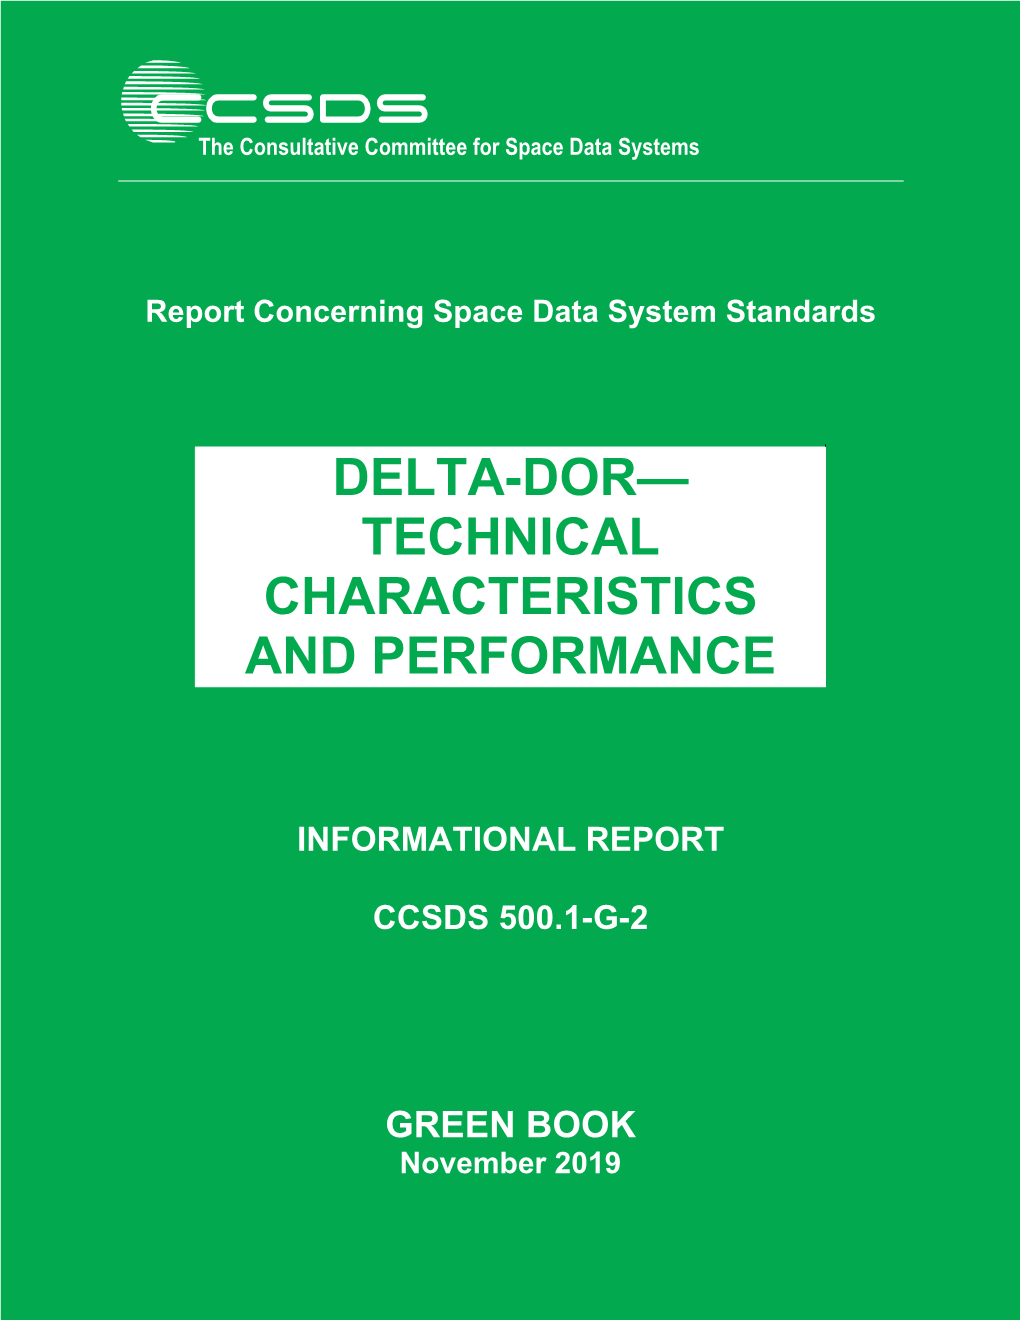 Delta-DOR—Technical Characteristics and Performance